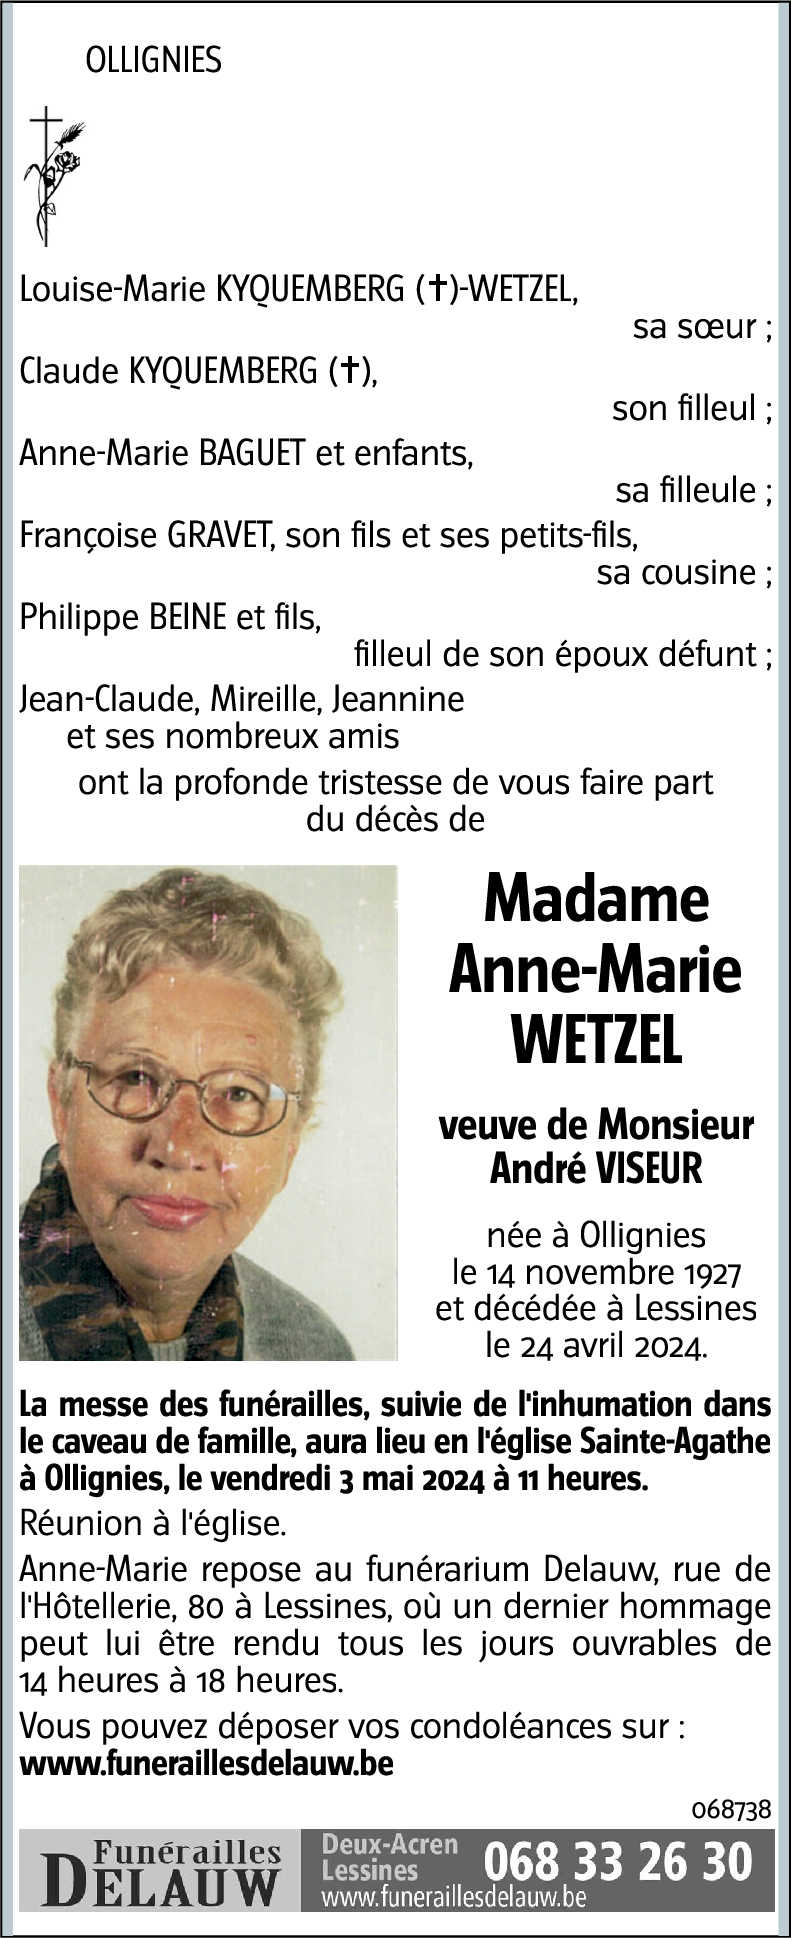 Anne-Marie WETZEL